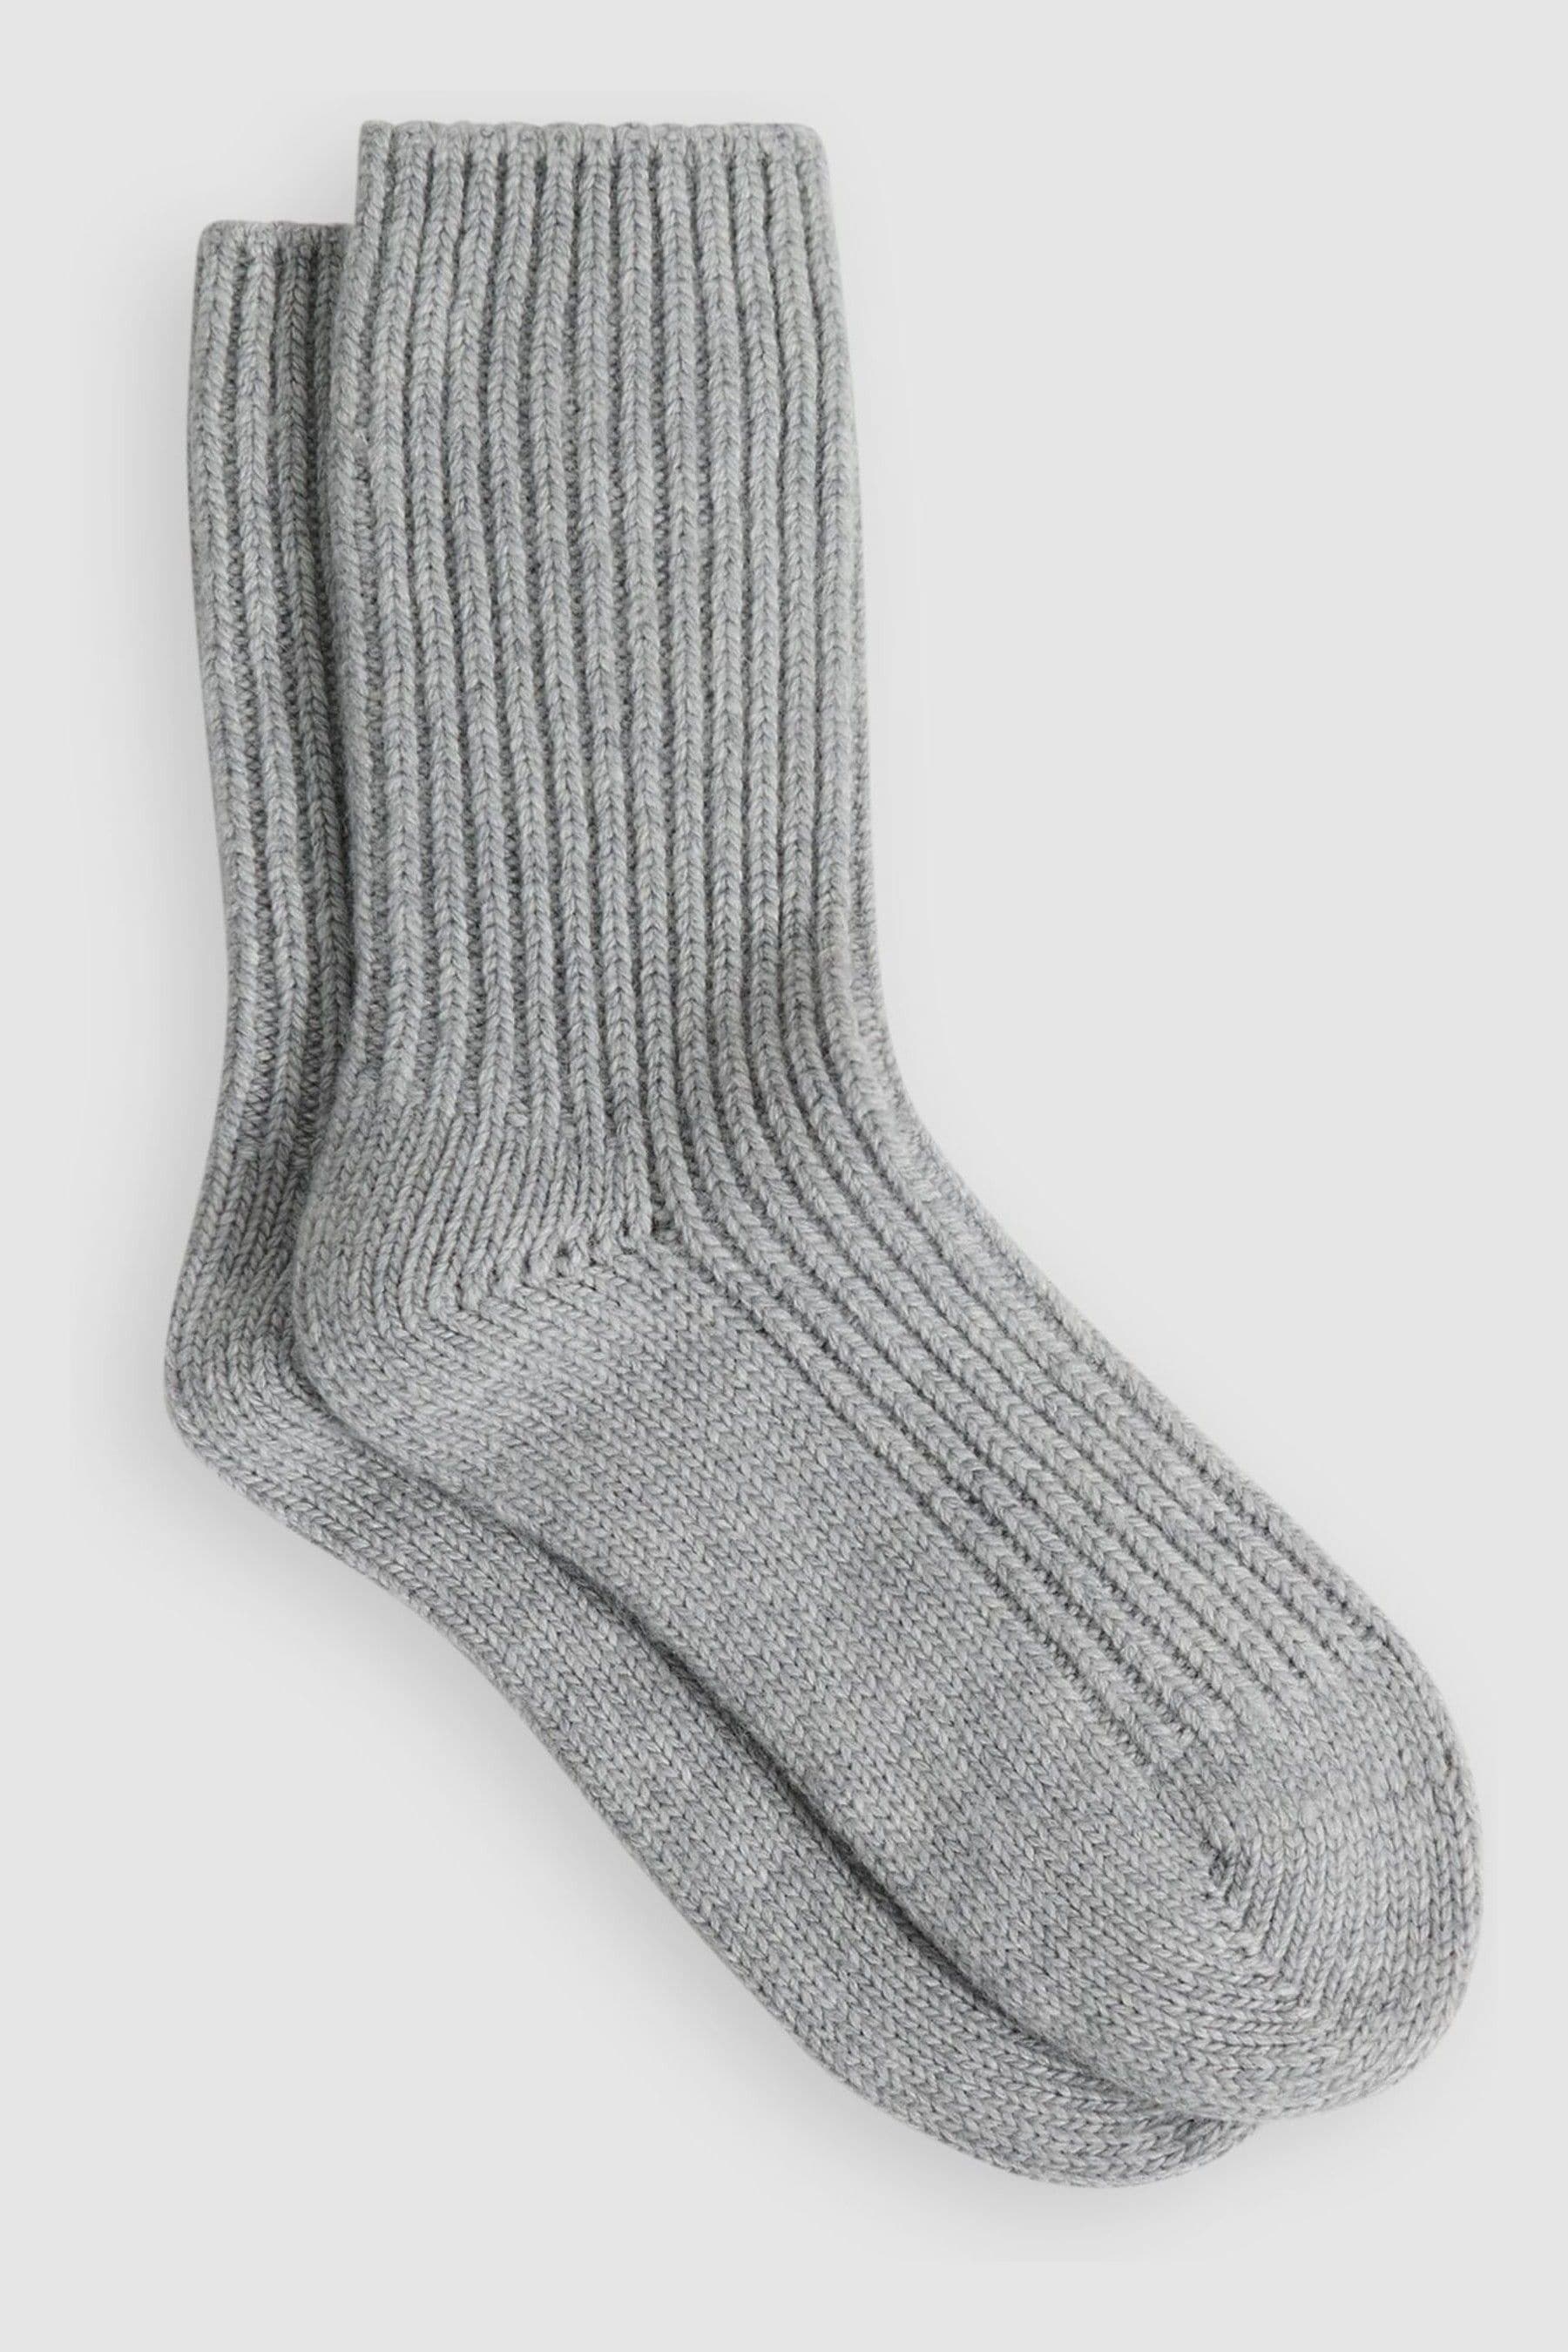 Reiss Carmen - Grey Wool Blend Ribbed Socks, Uk 6-8